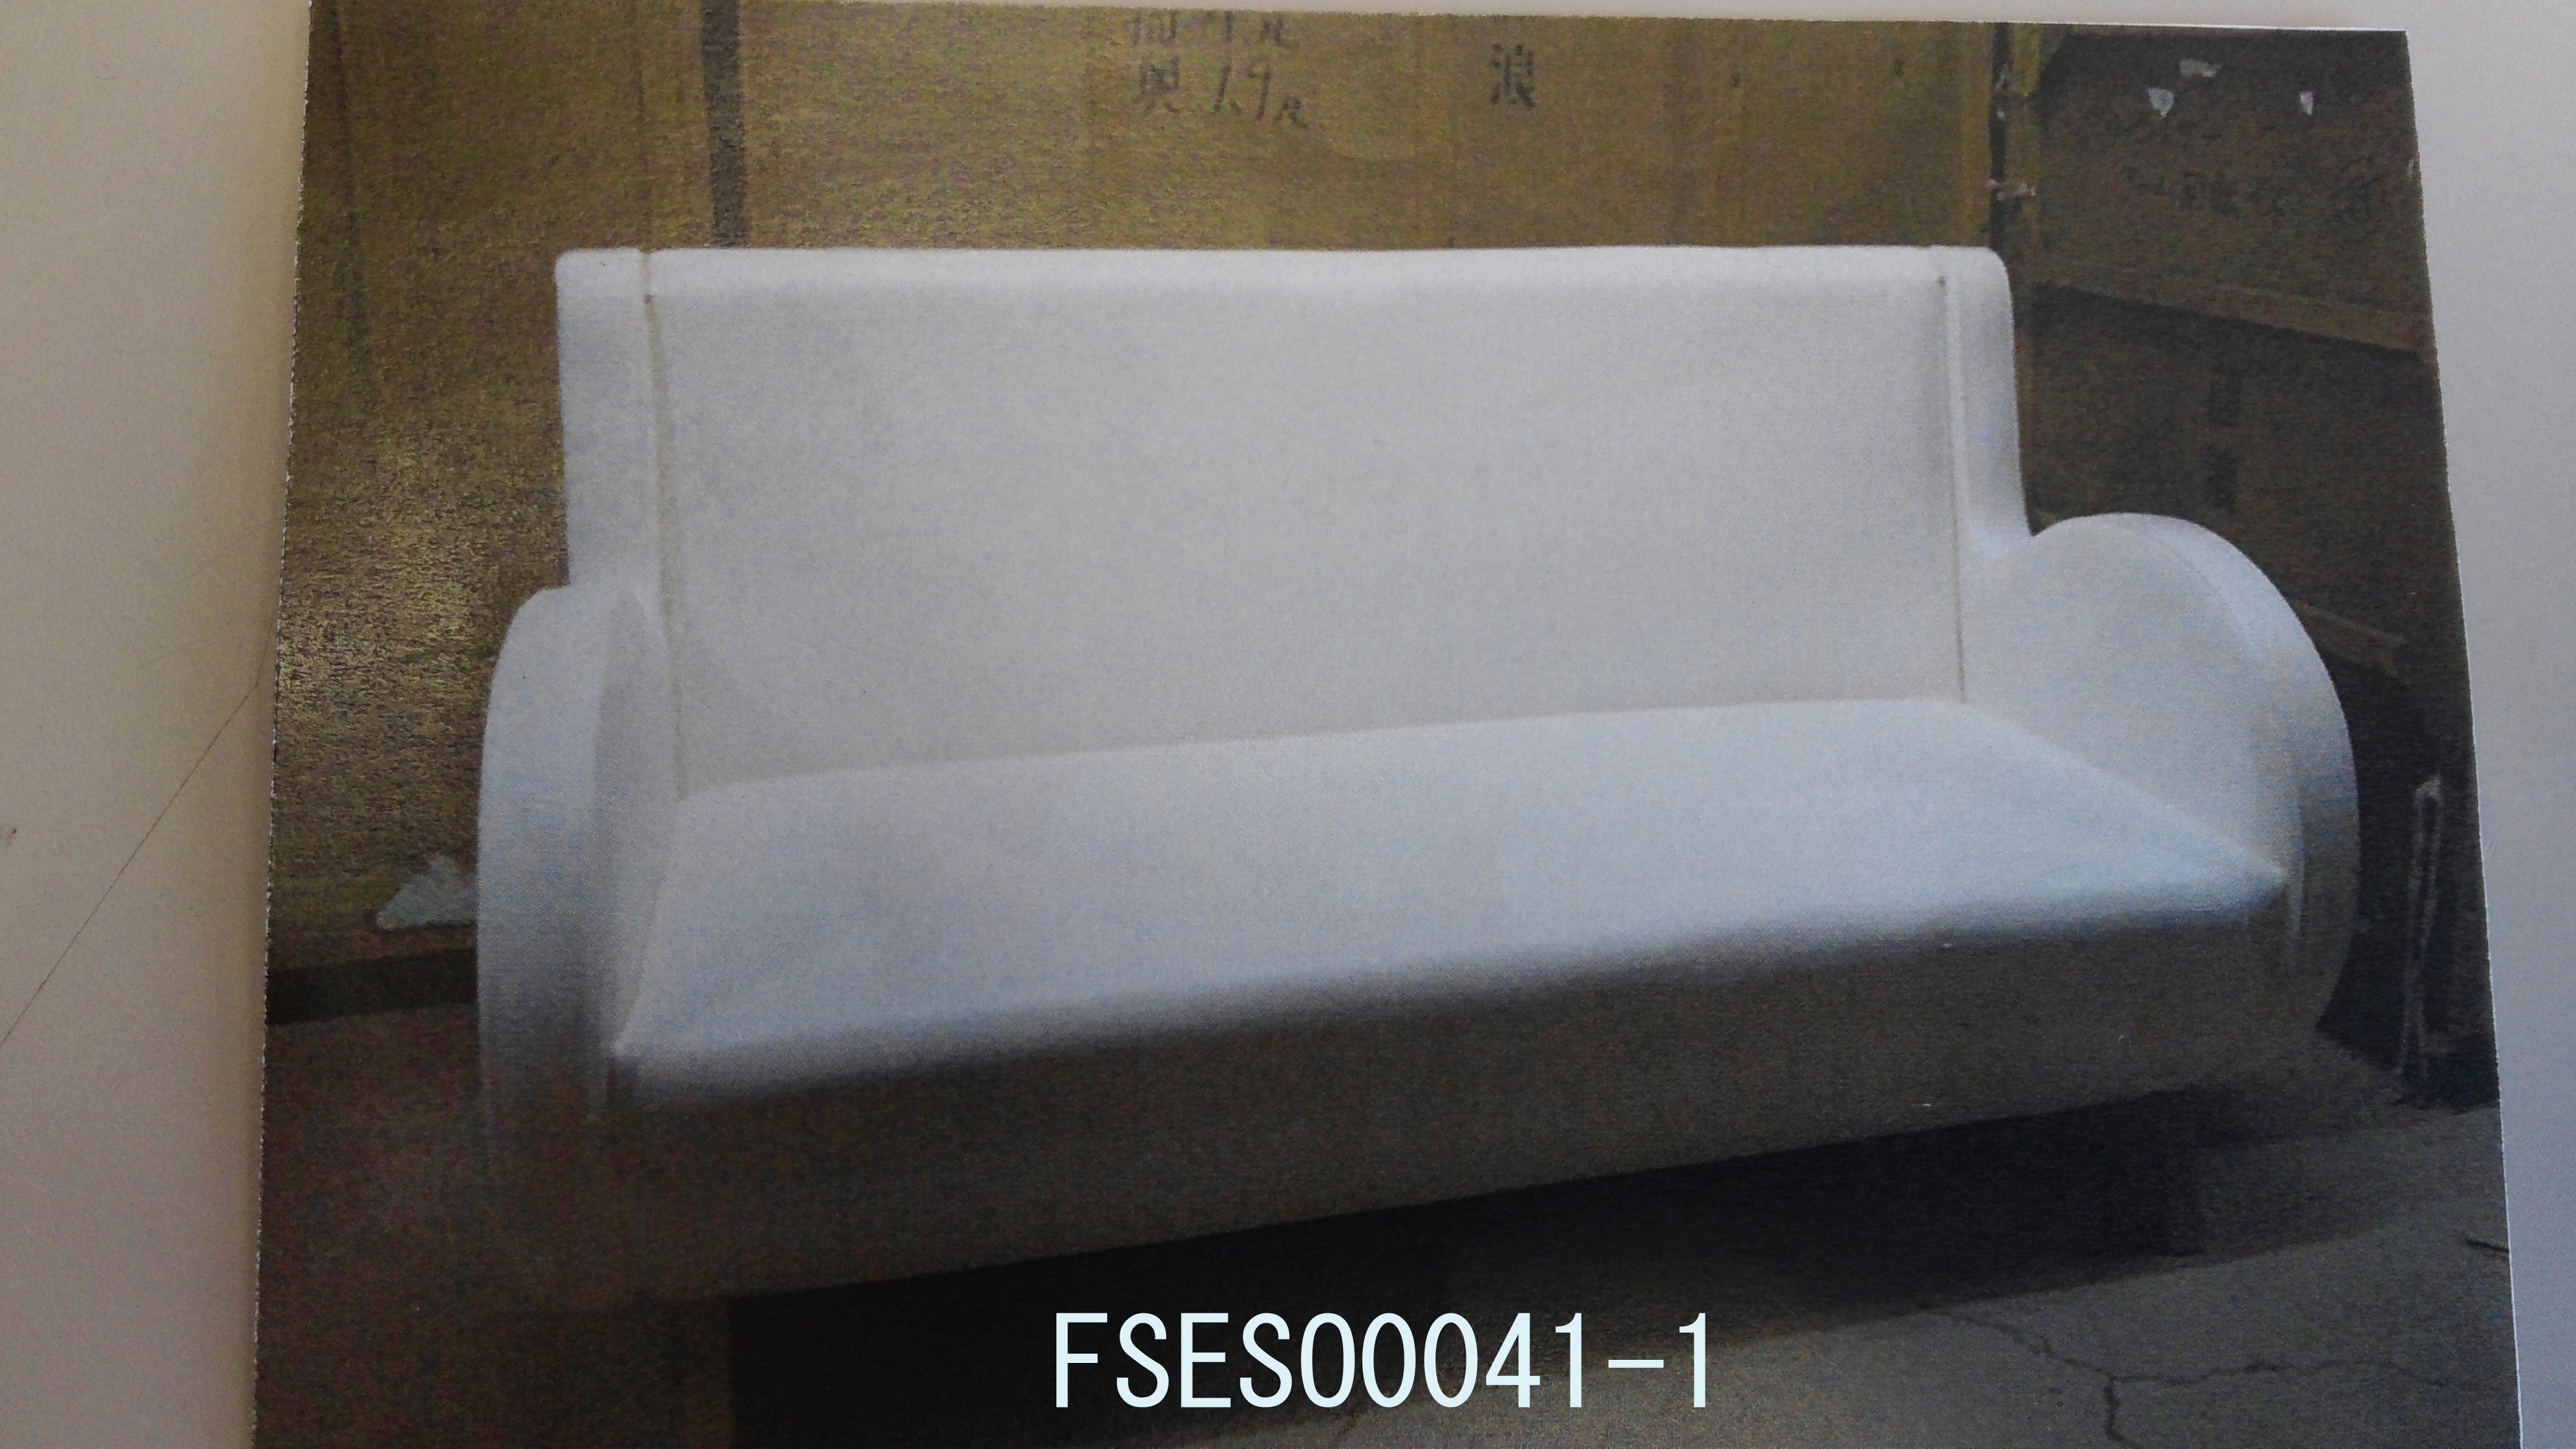 FSESO0041-1